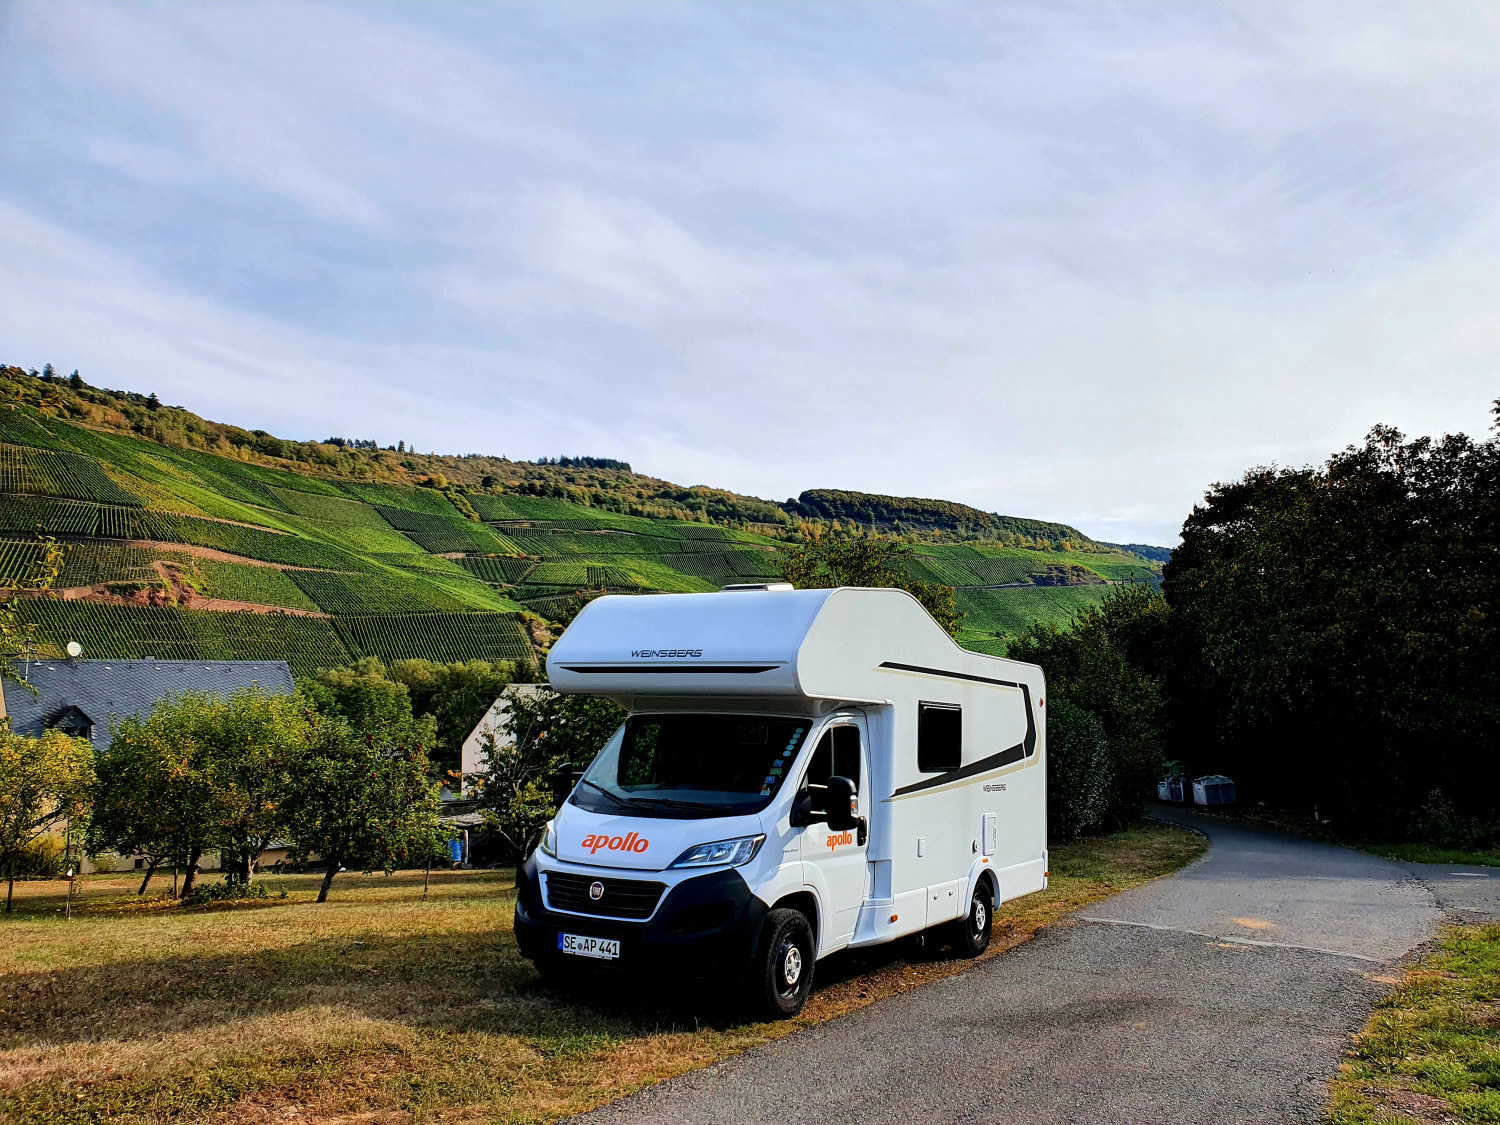 præsentation kontanter billedtekst Camper roadtrip i Tyskland 🇩🇪 | Tyskland | travelush